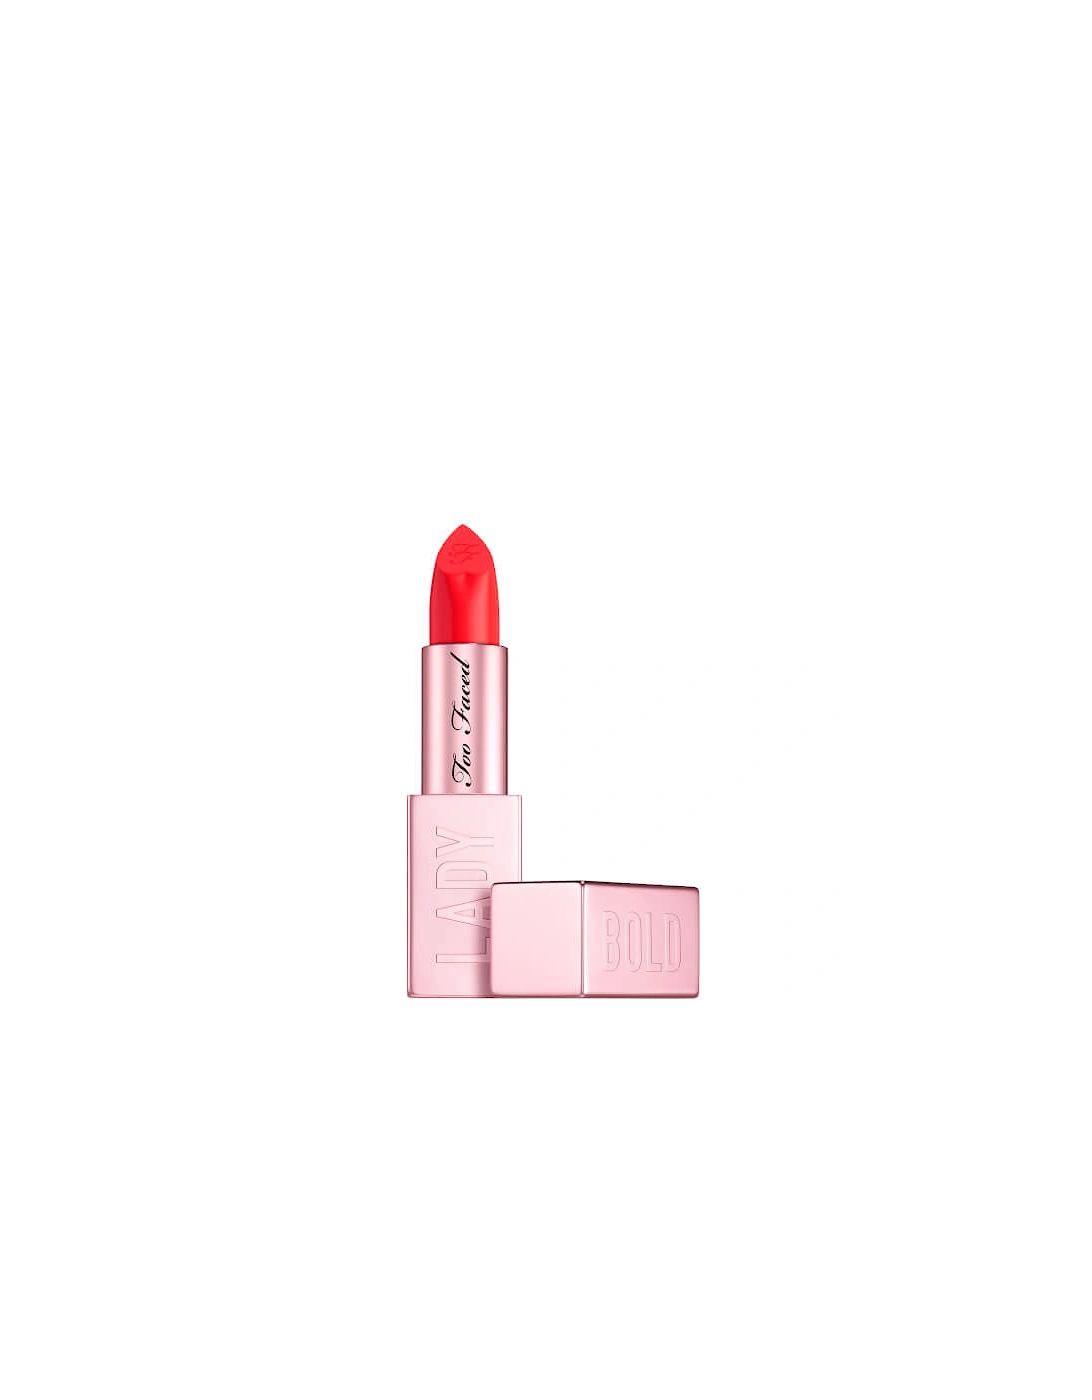 Lady Bold Em-Power Pigment Lipstick - You Do You, 2 of 1